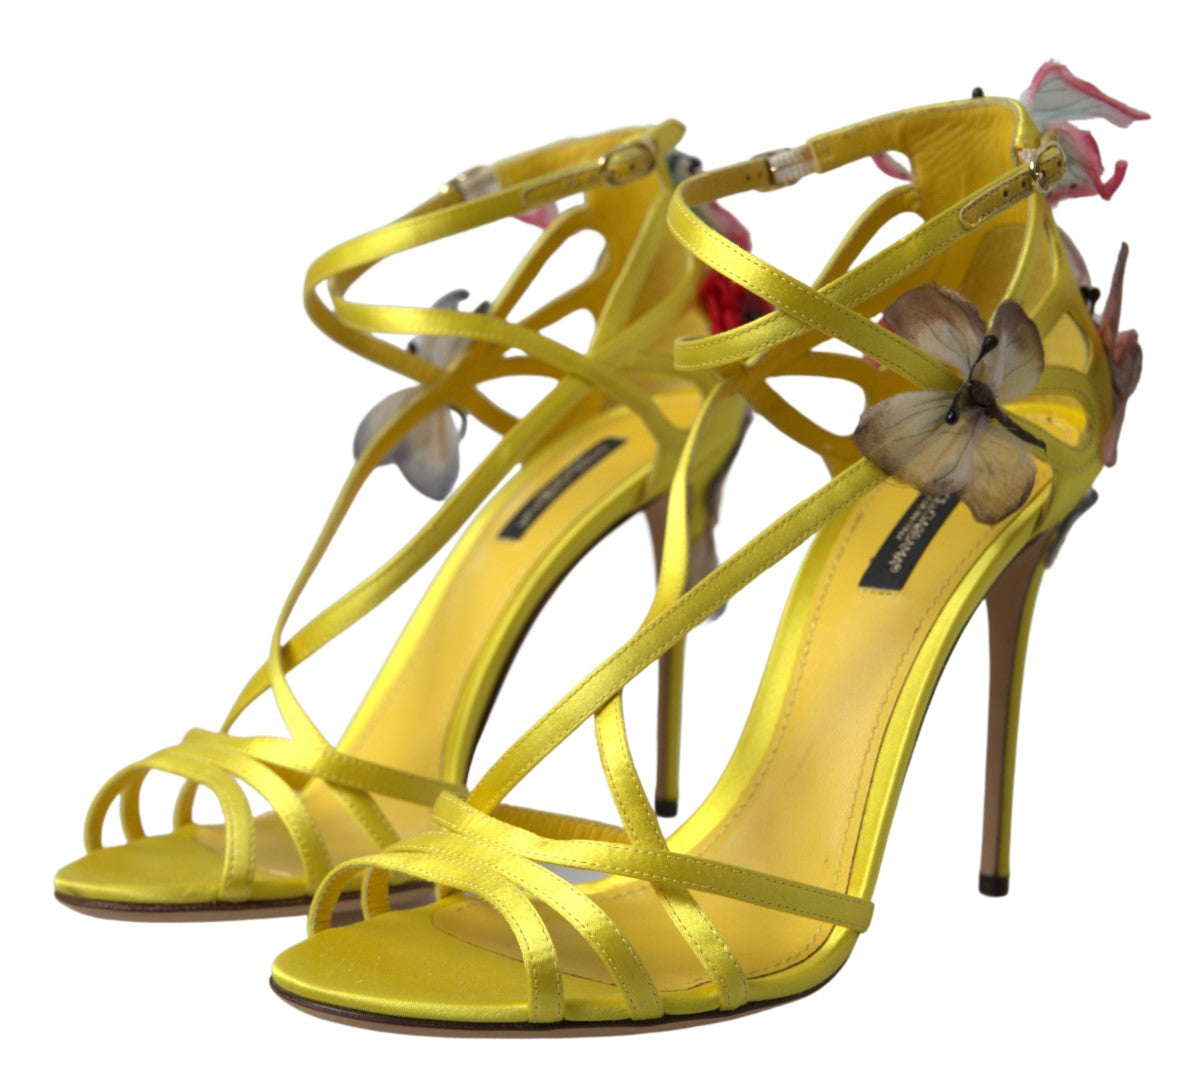 butterfly heels | Butterfly heels, Womens sandals, Sandal fashion